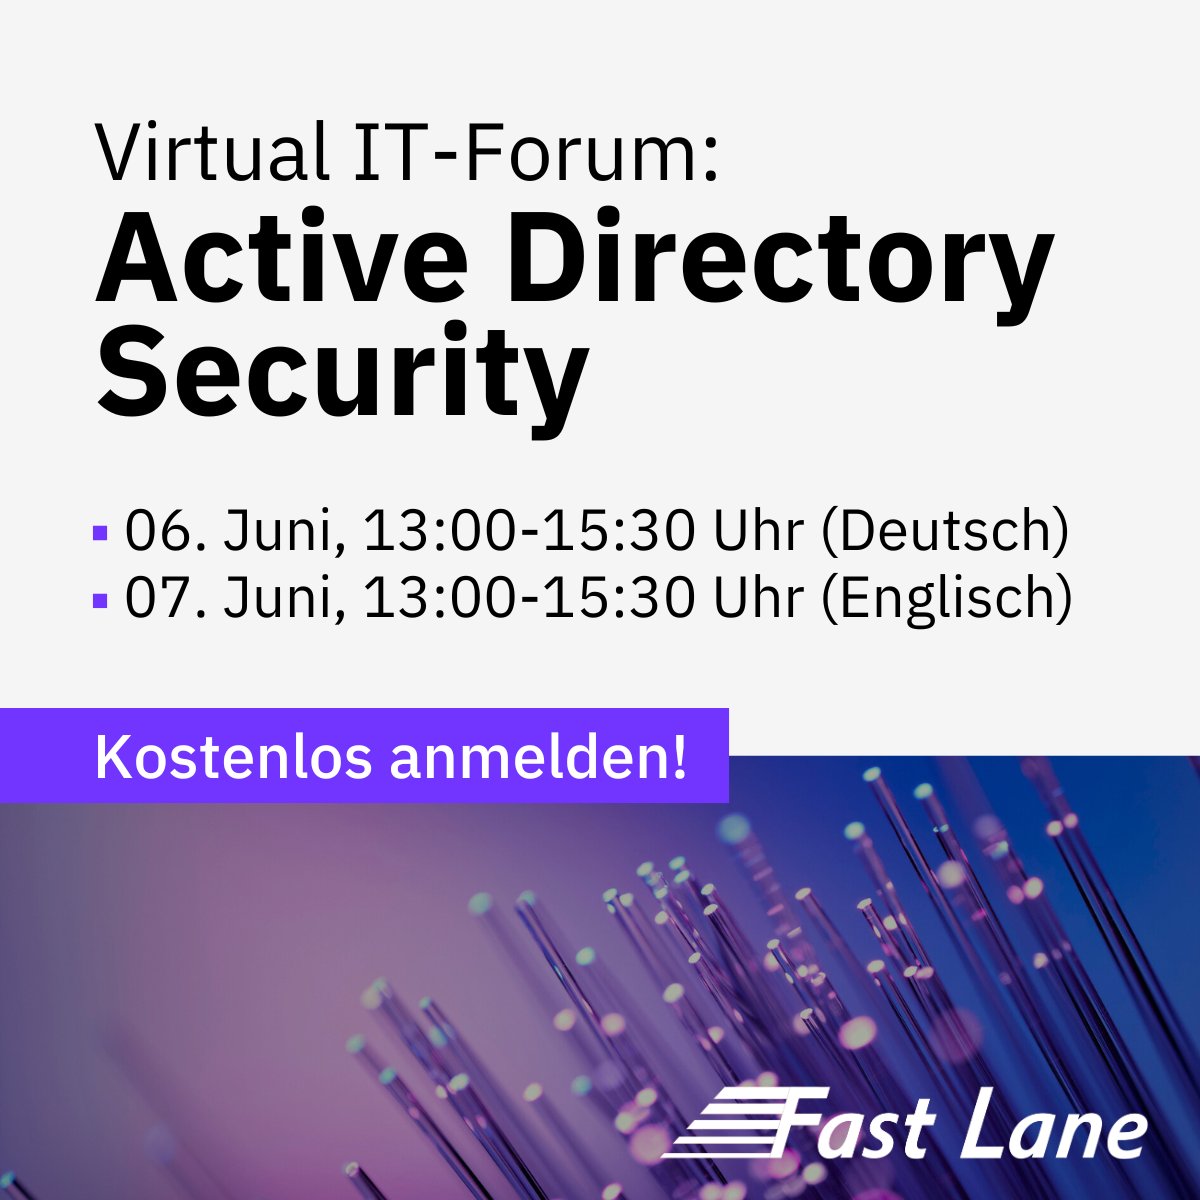 Sie sind eingeladen zu unserem IT-Forum Online-Special zum Thema 'Active Directory Security' am 6. und 7. Juni 2024. 🌞📅
Melden Sie sich jetzt an, um sich noch einen Platz zu sichern: ow.ly/7ZHX50Rym7g

#ActiveDirectory #Security #FastLane #Windows